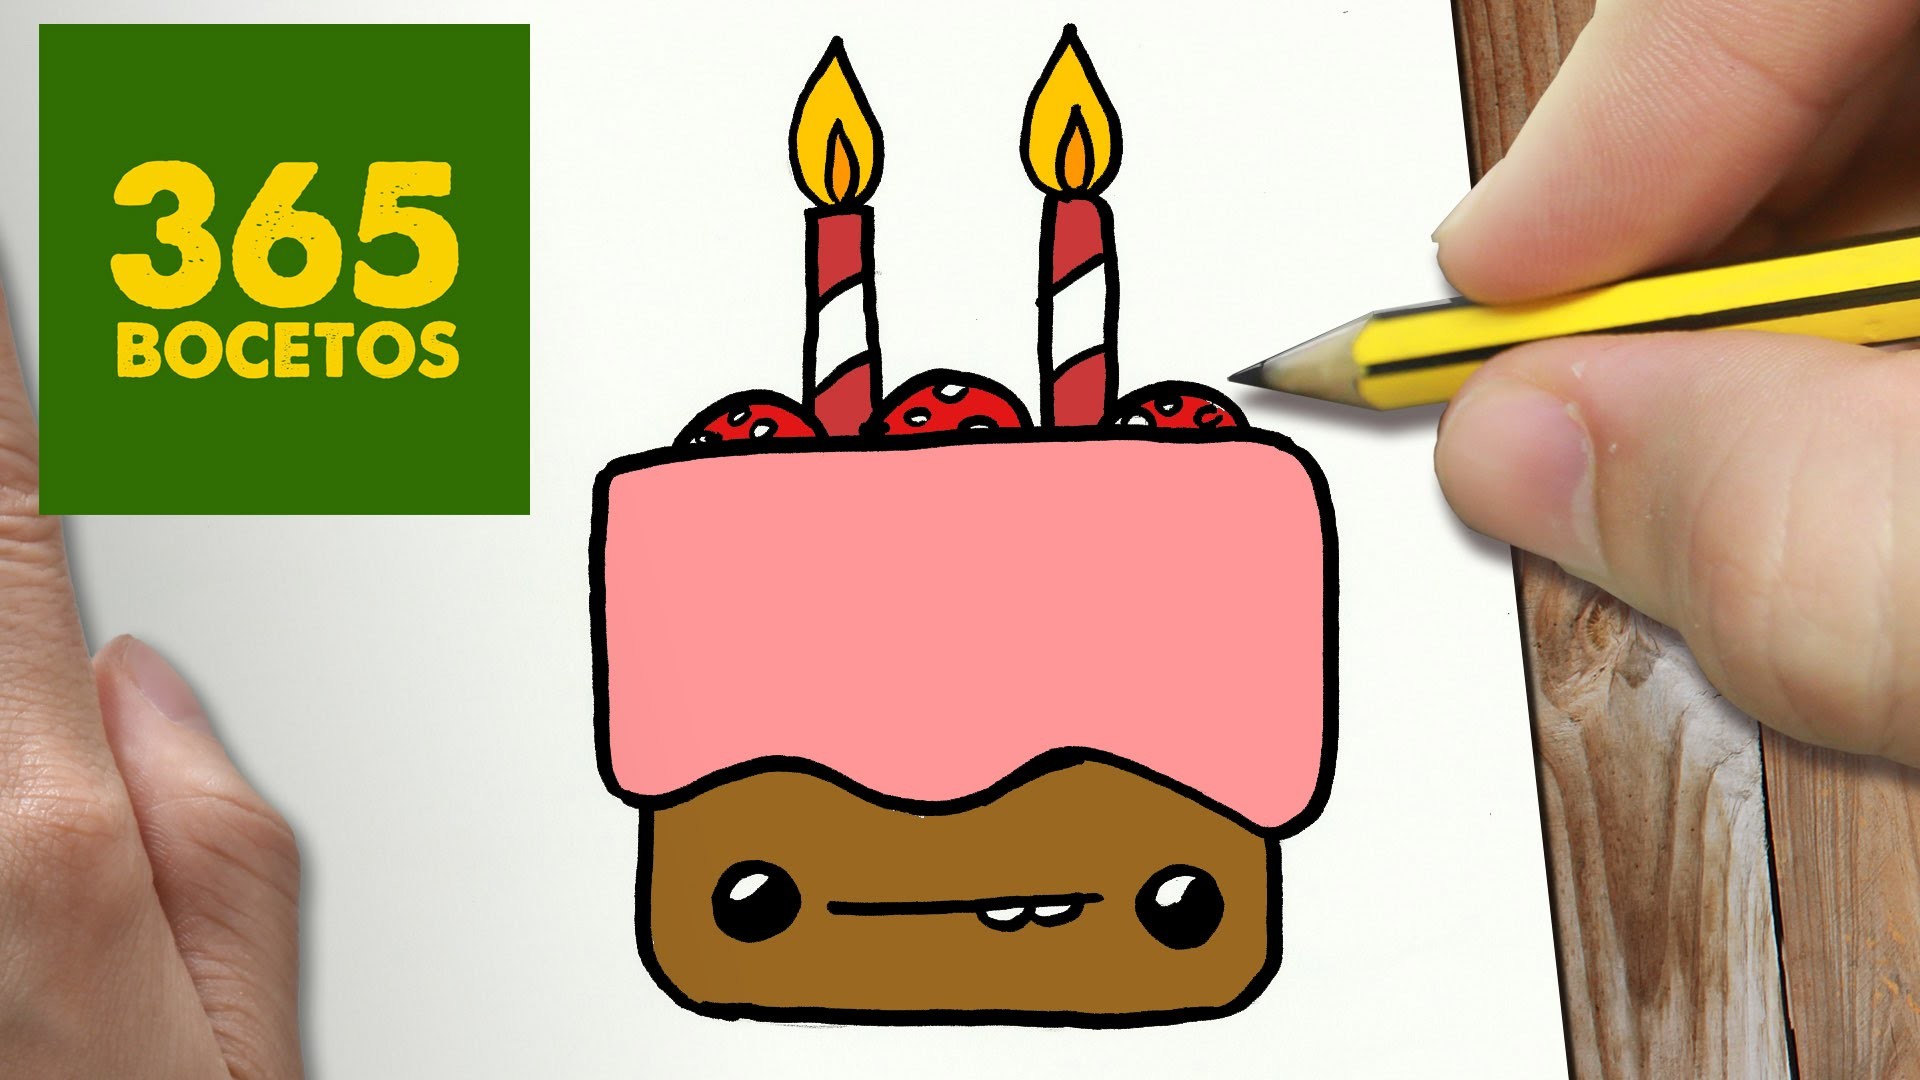 COMO DIBUJAR TARTA KAWAII PASO A PASO - Dibujos kawaii faciles - How to draw a cake